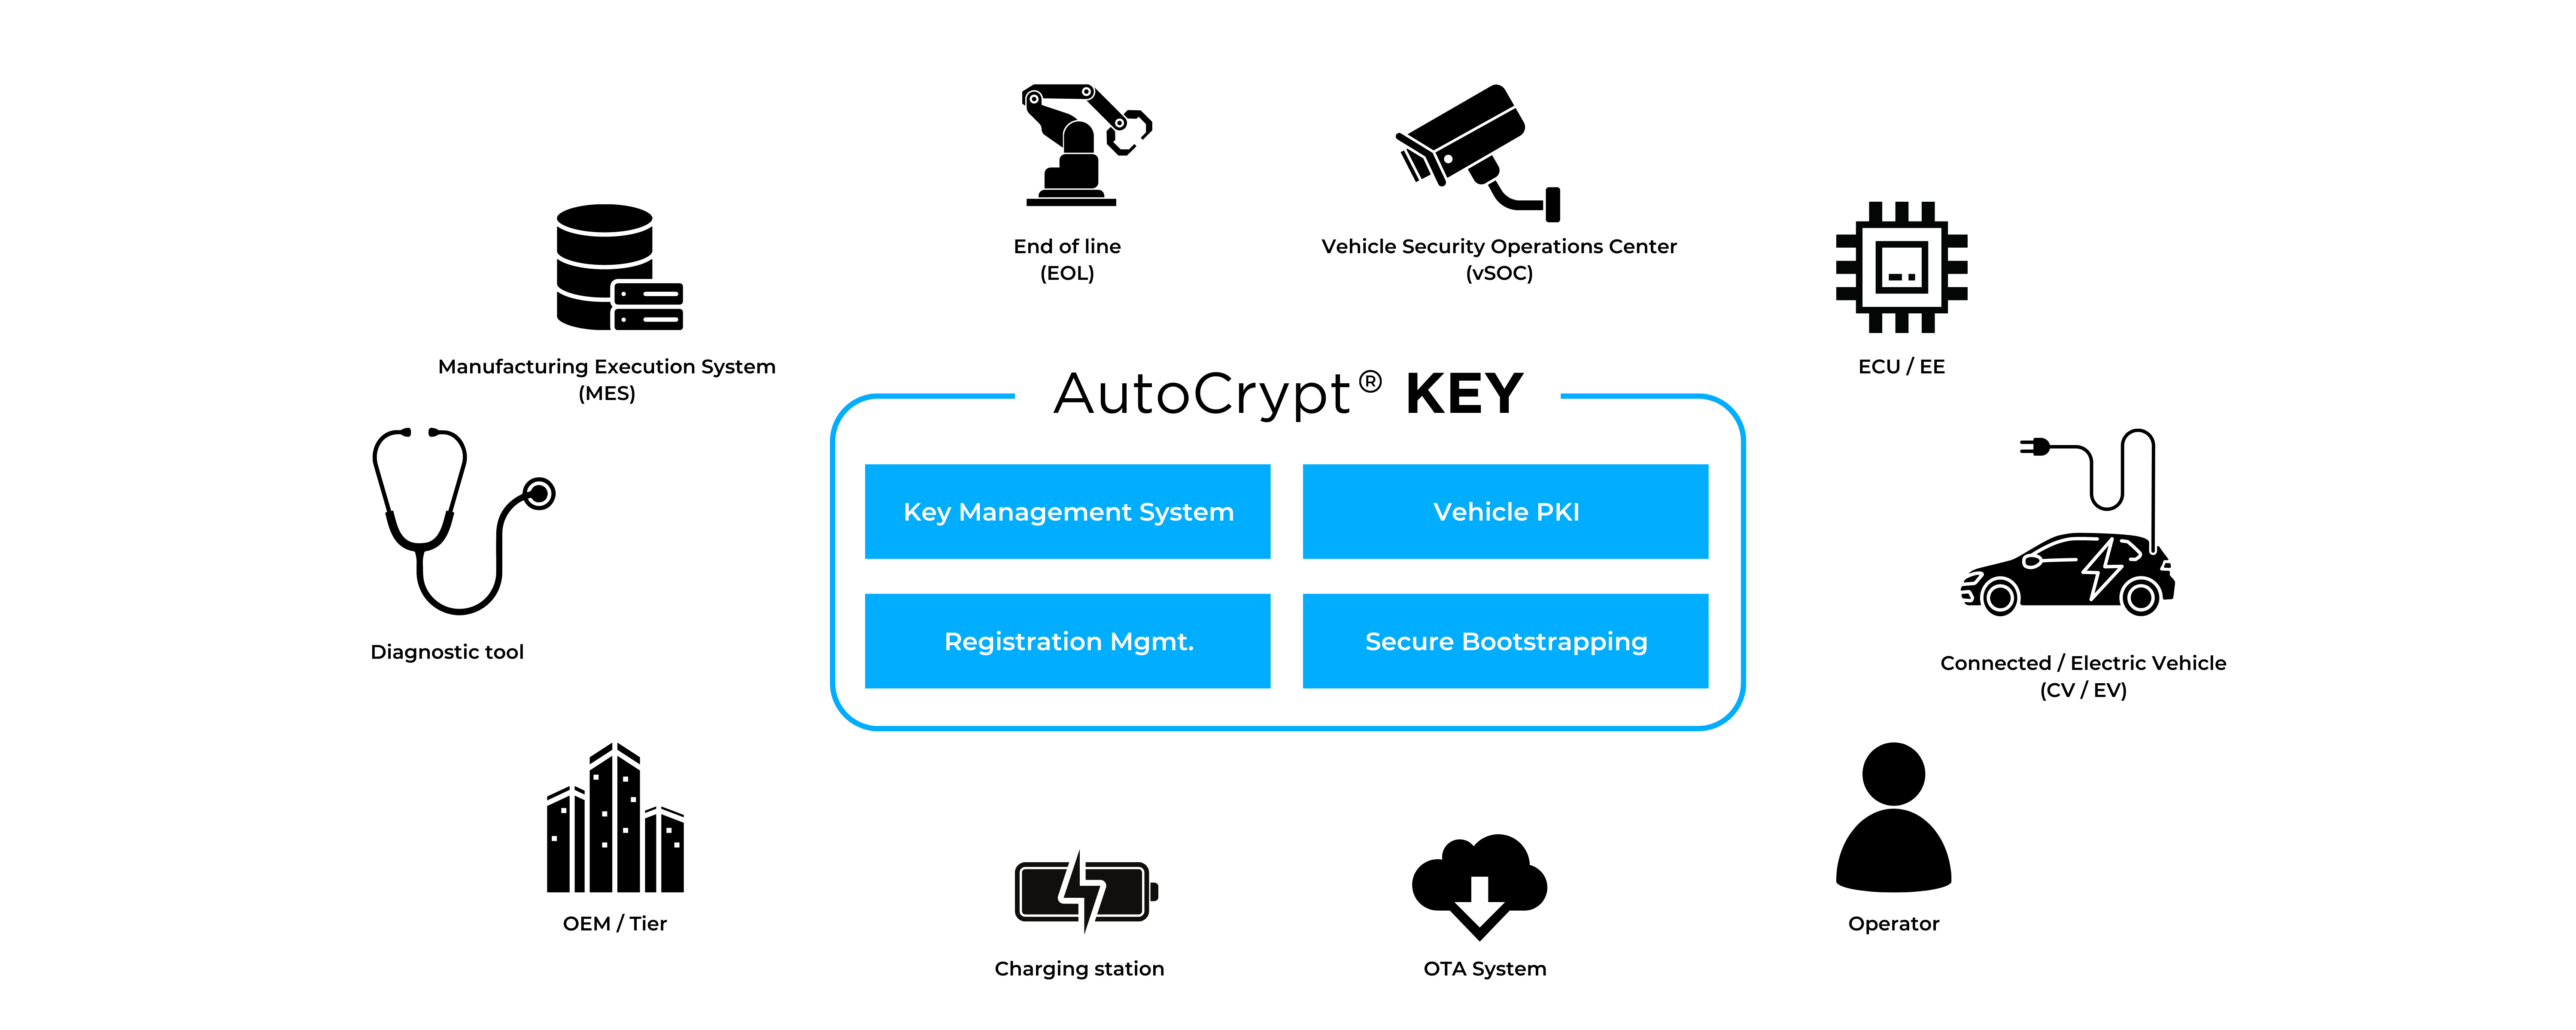 AutoCrypt KEY